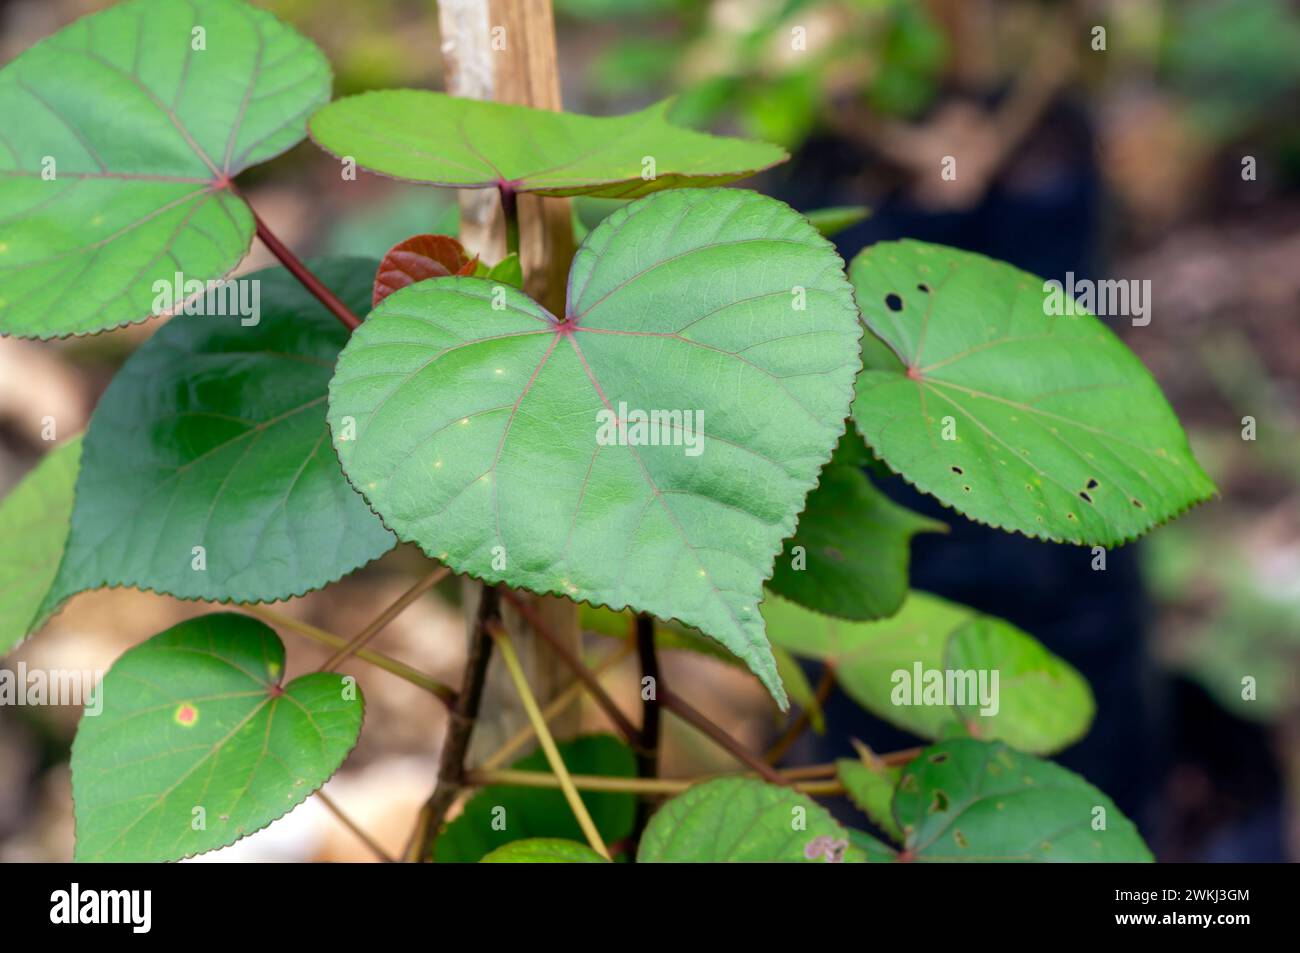 Daun Waru, Hibiscus tiliaceus or sea hibiscus green leaves, heart shape leaves of Bonsai tree. Stock Photo